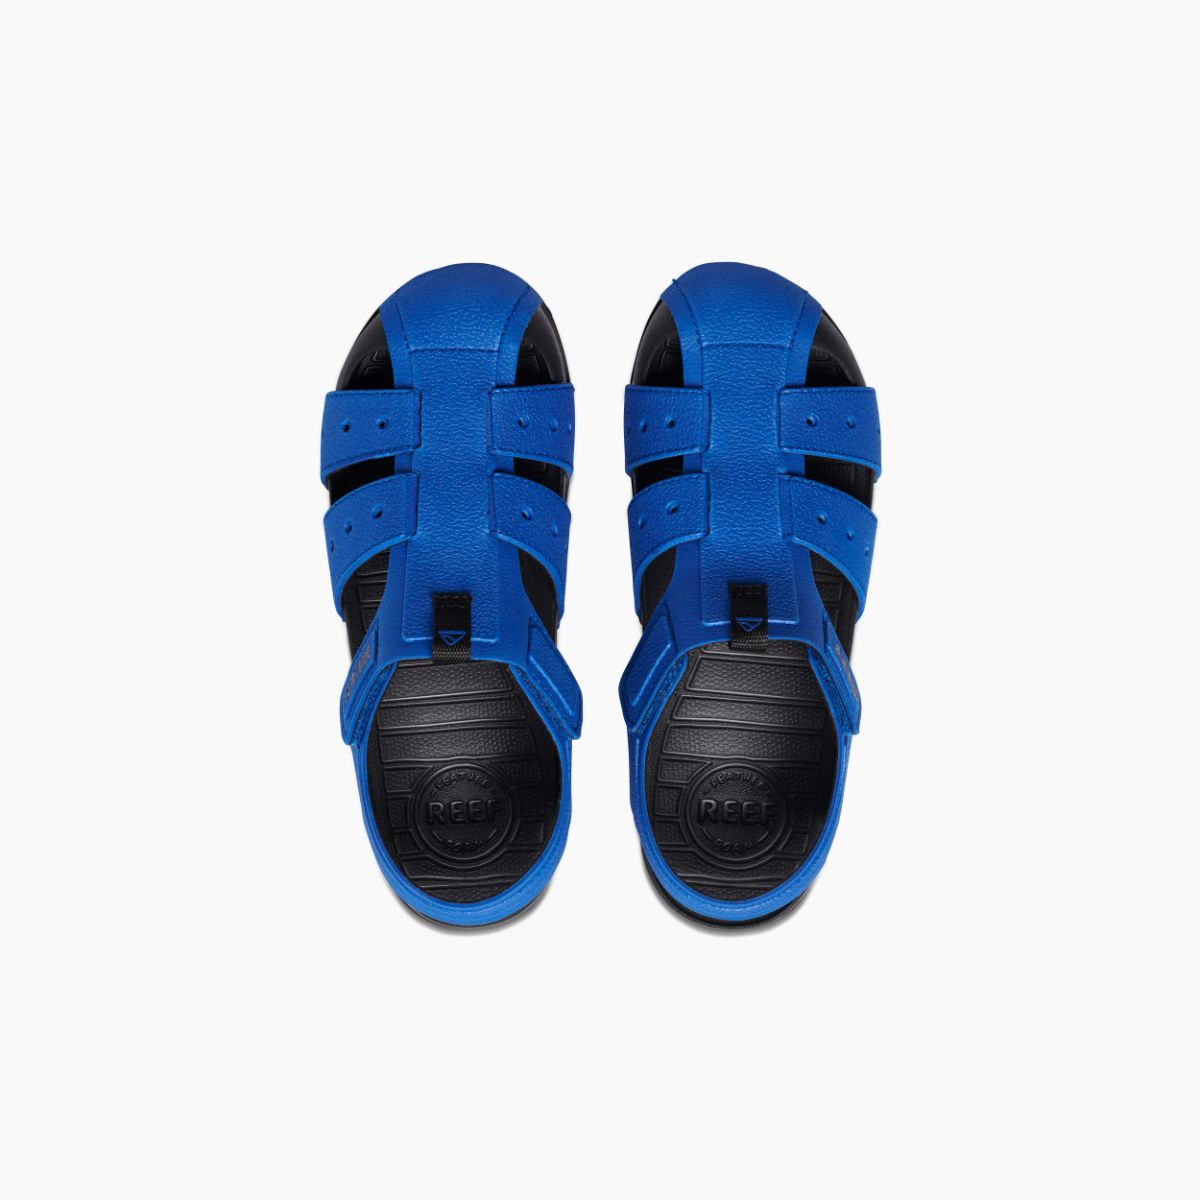 Boy's Shoes Kids Water Beachy in Blue/Black | REEF®